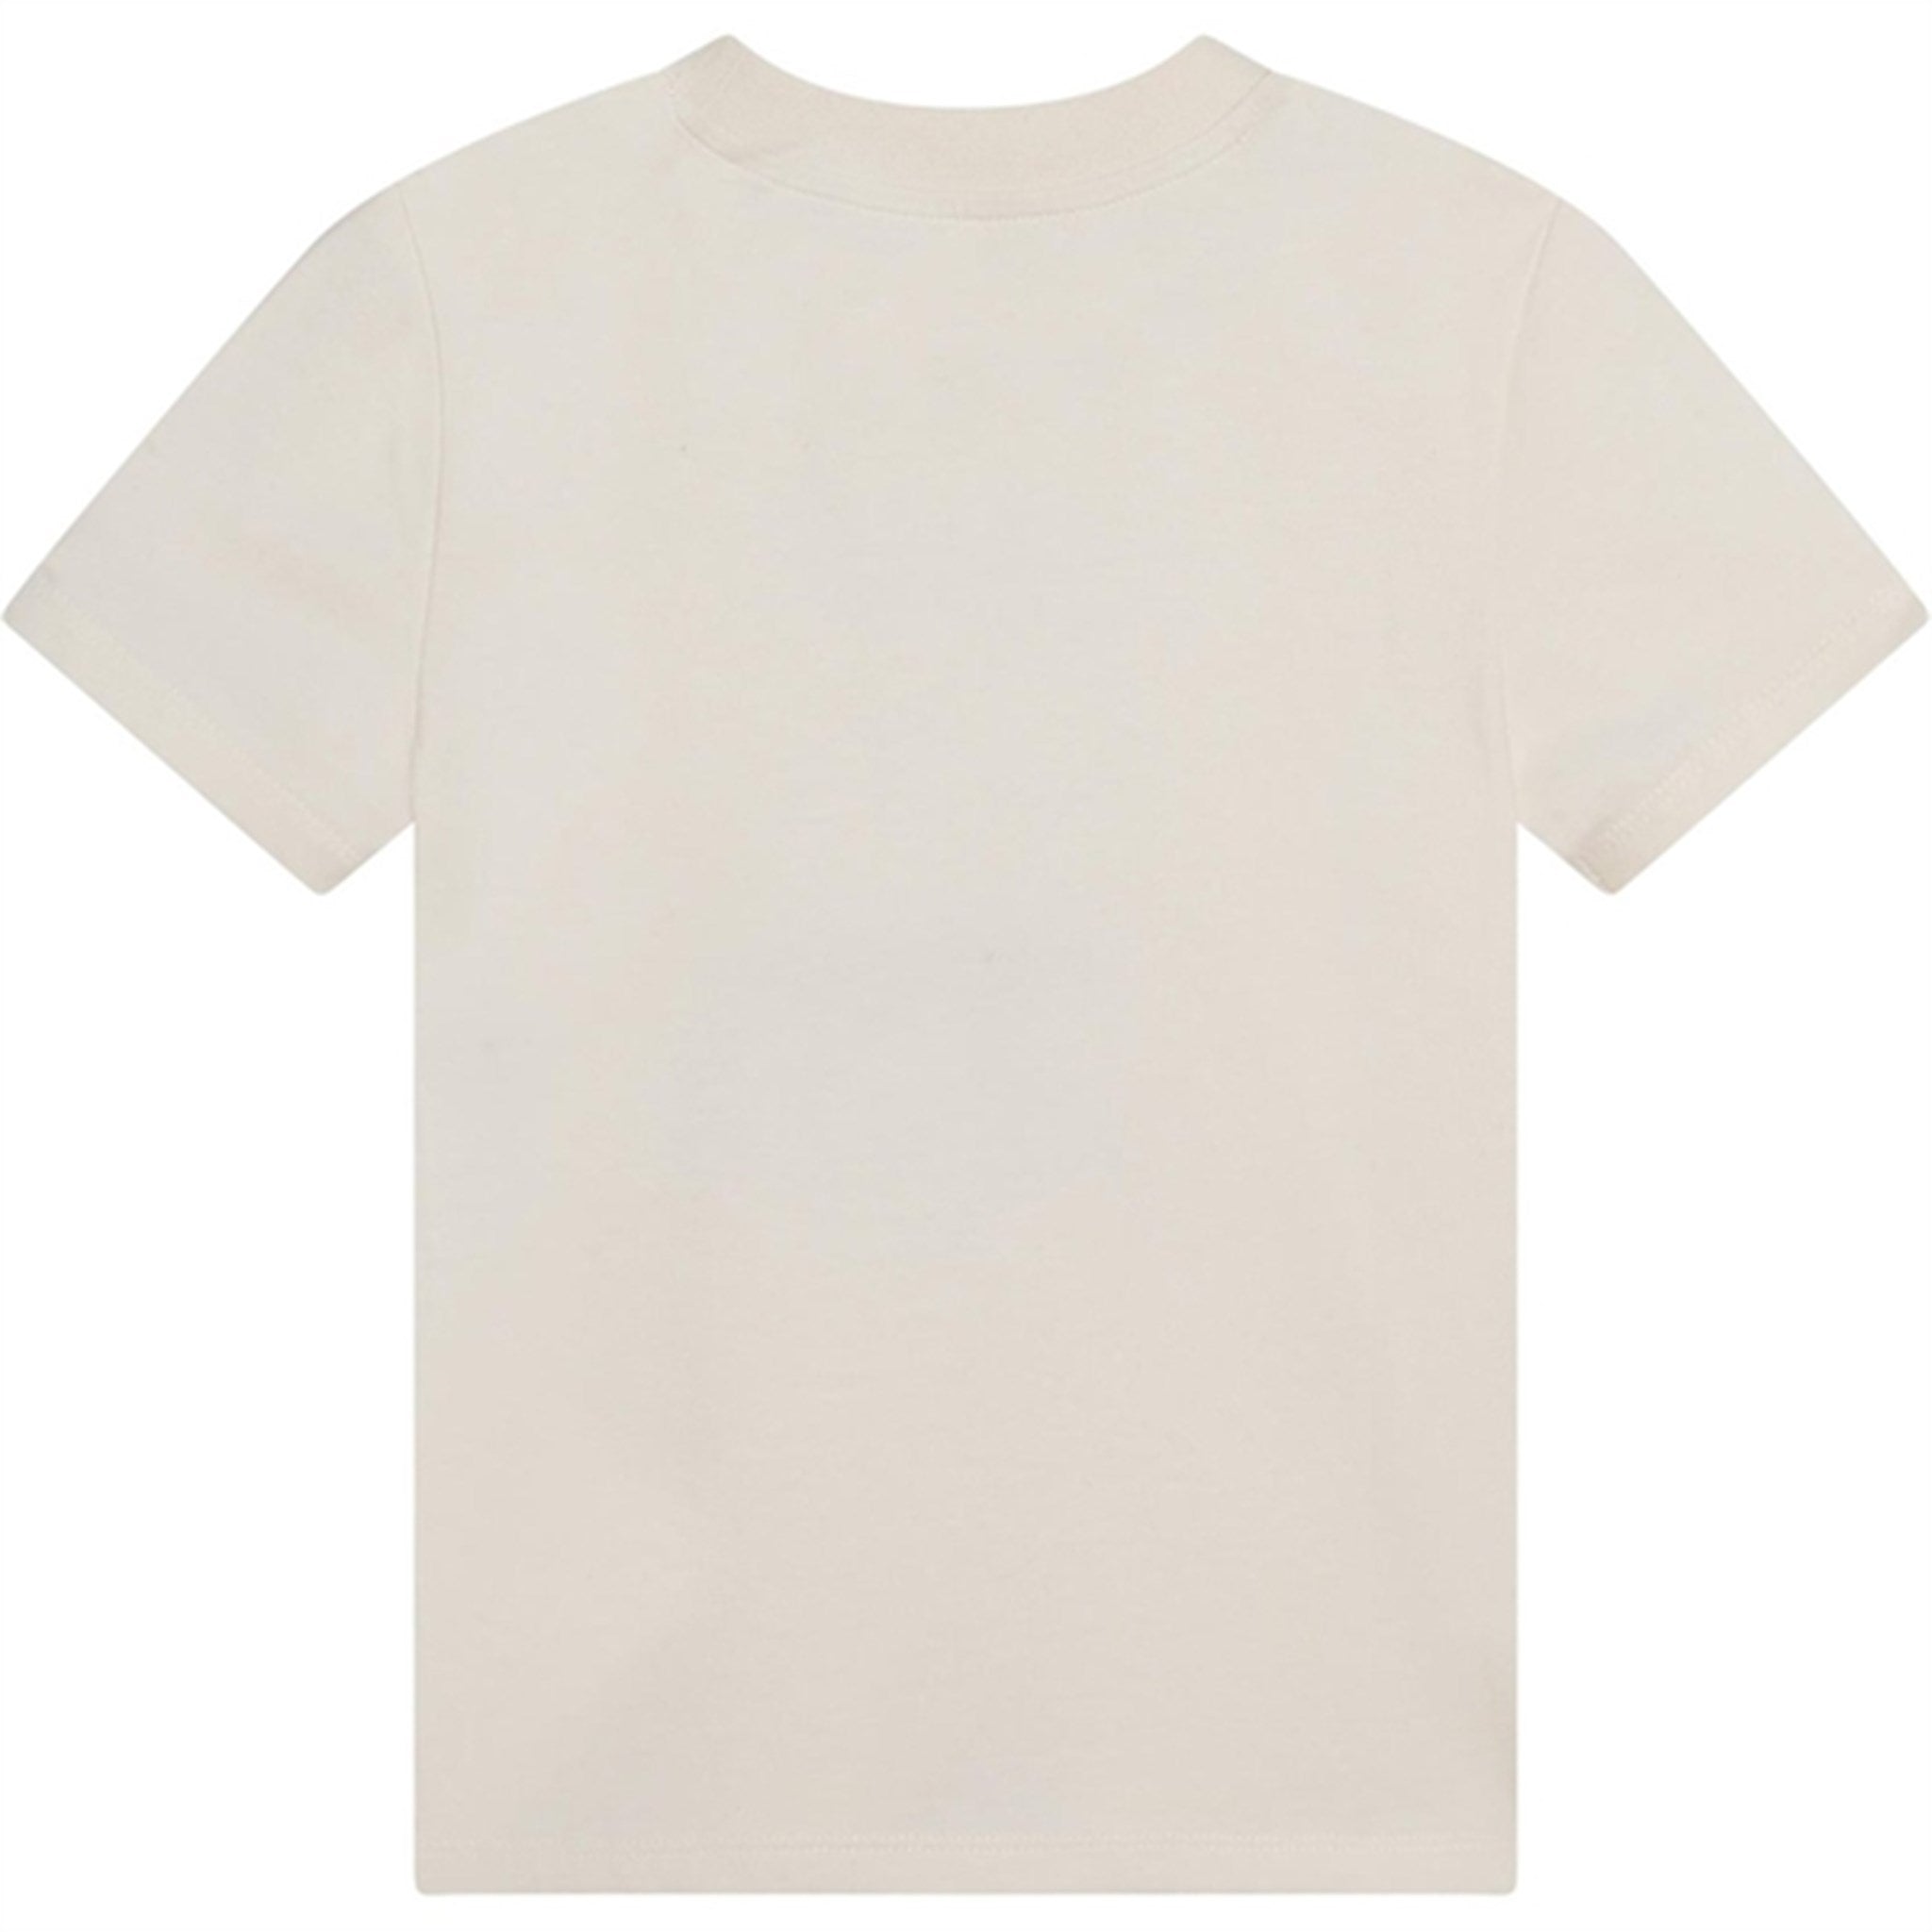 Kenzo T-shirt Cream 2